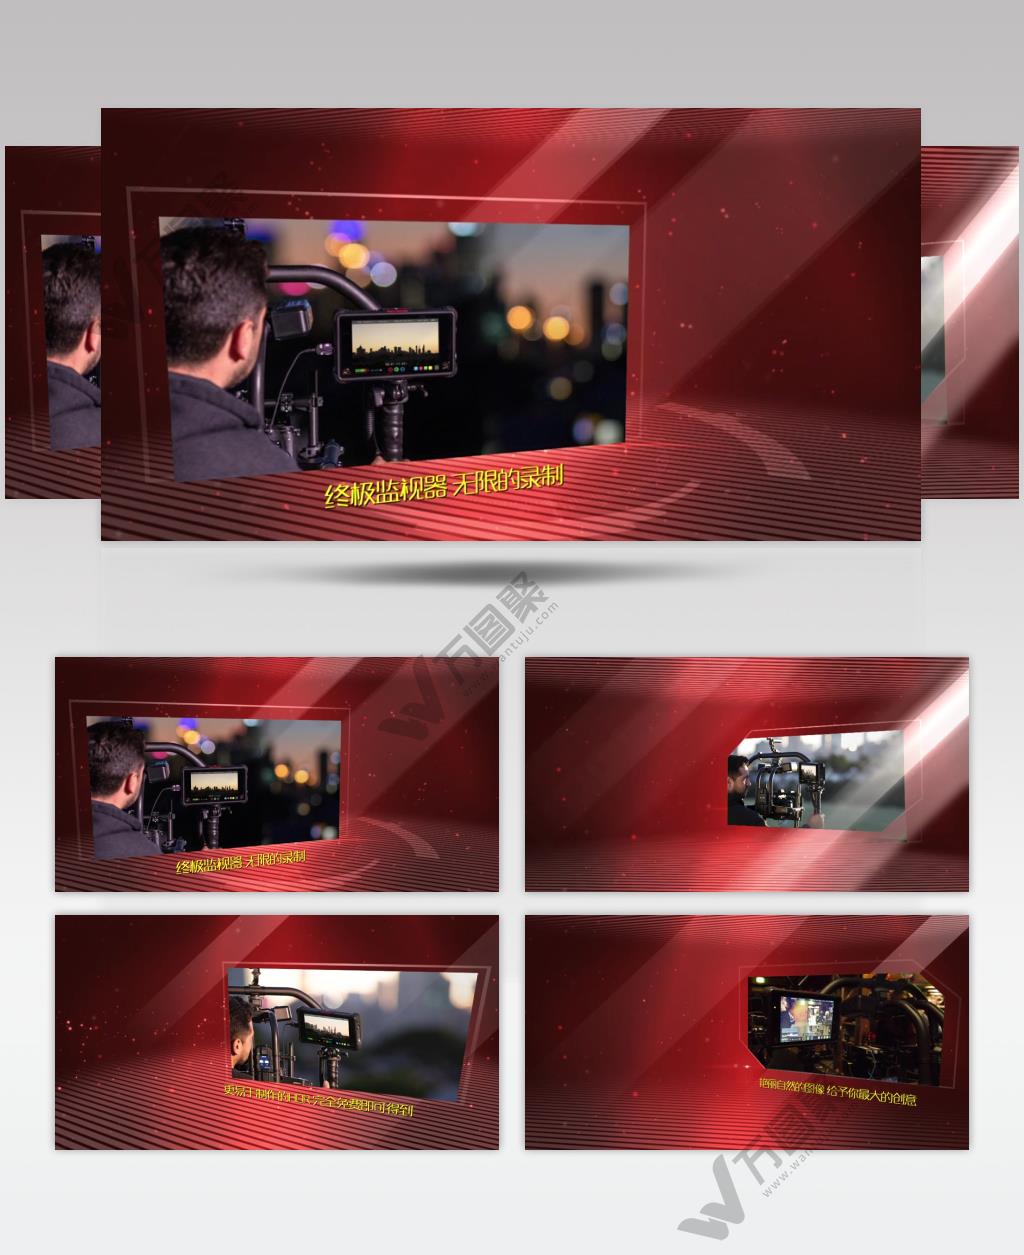 edius大气红色科技三维空间照片图片展示企业产品模板 edius模板免费下载 edius源文件